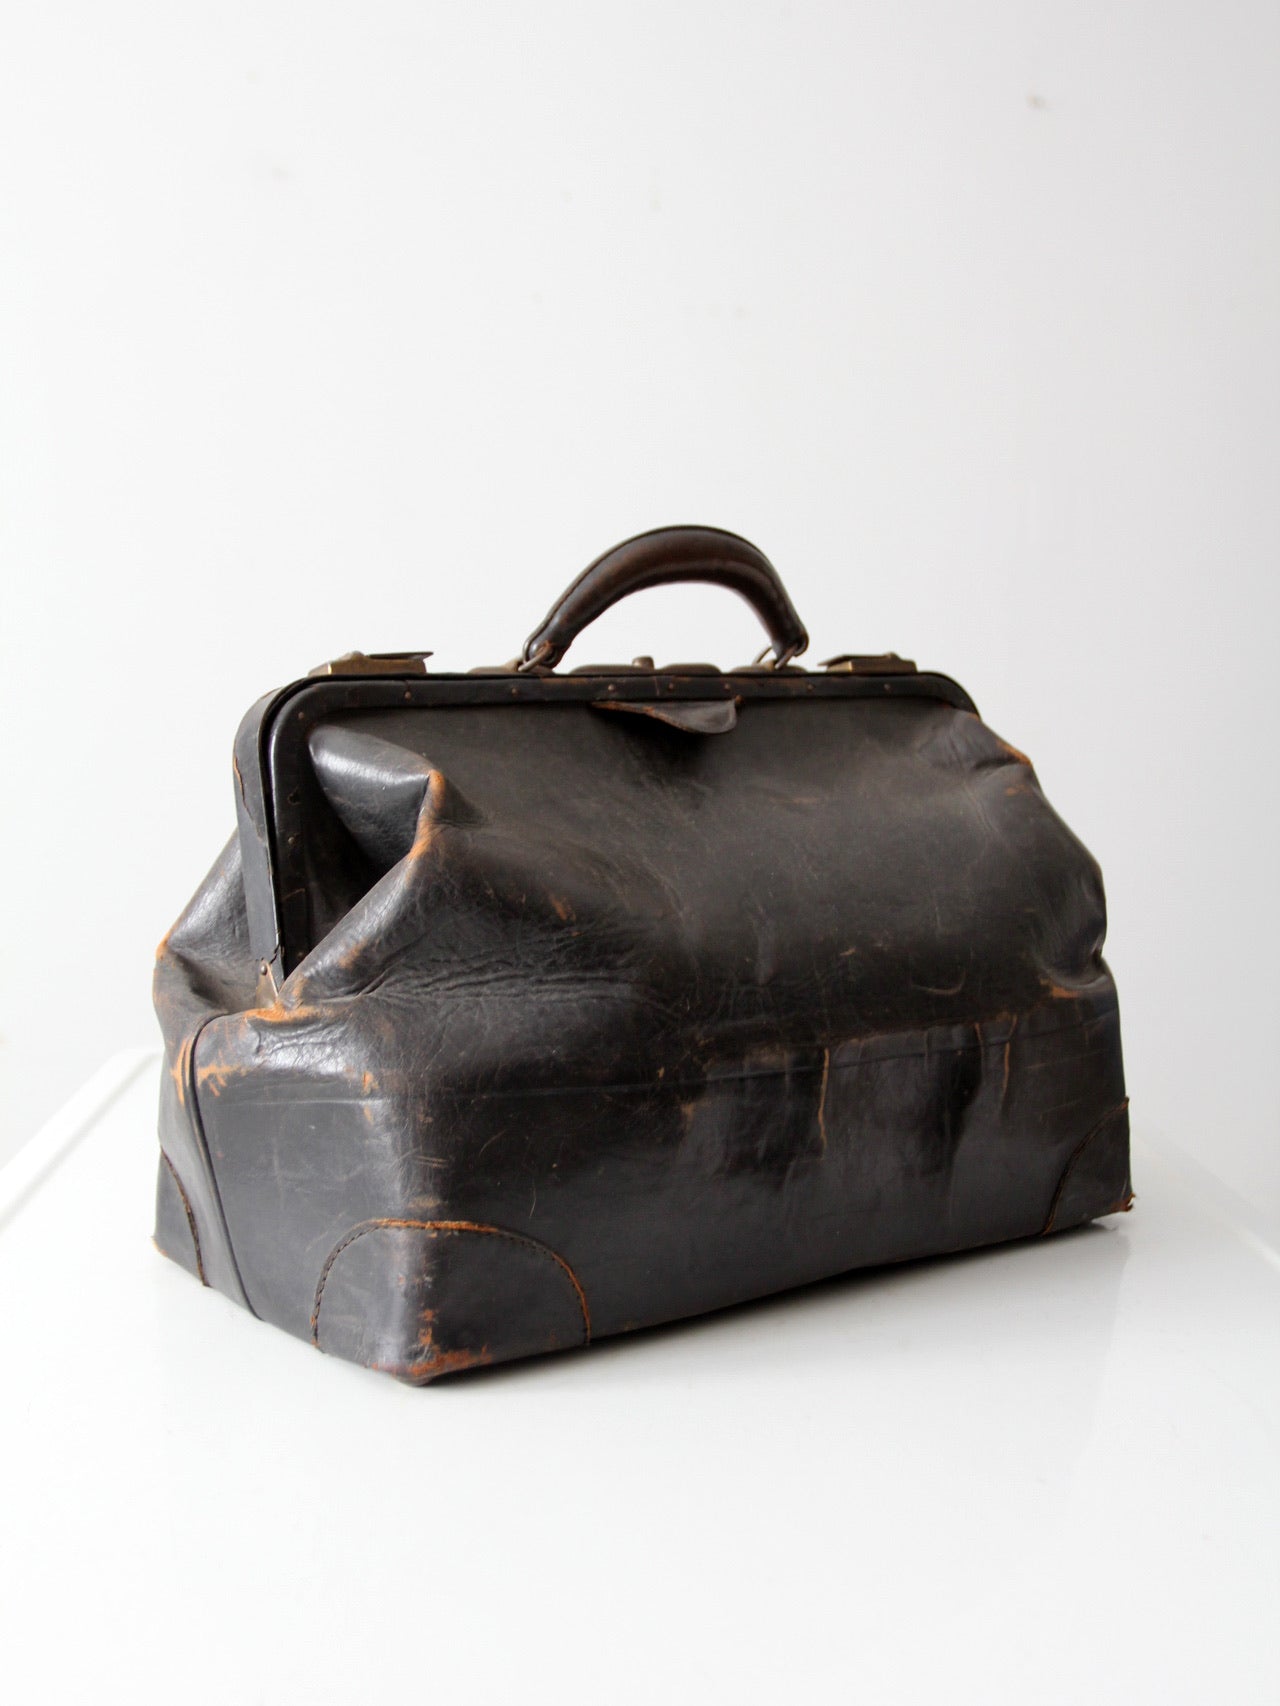 antique doctor's bag